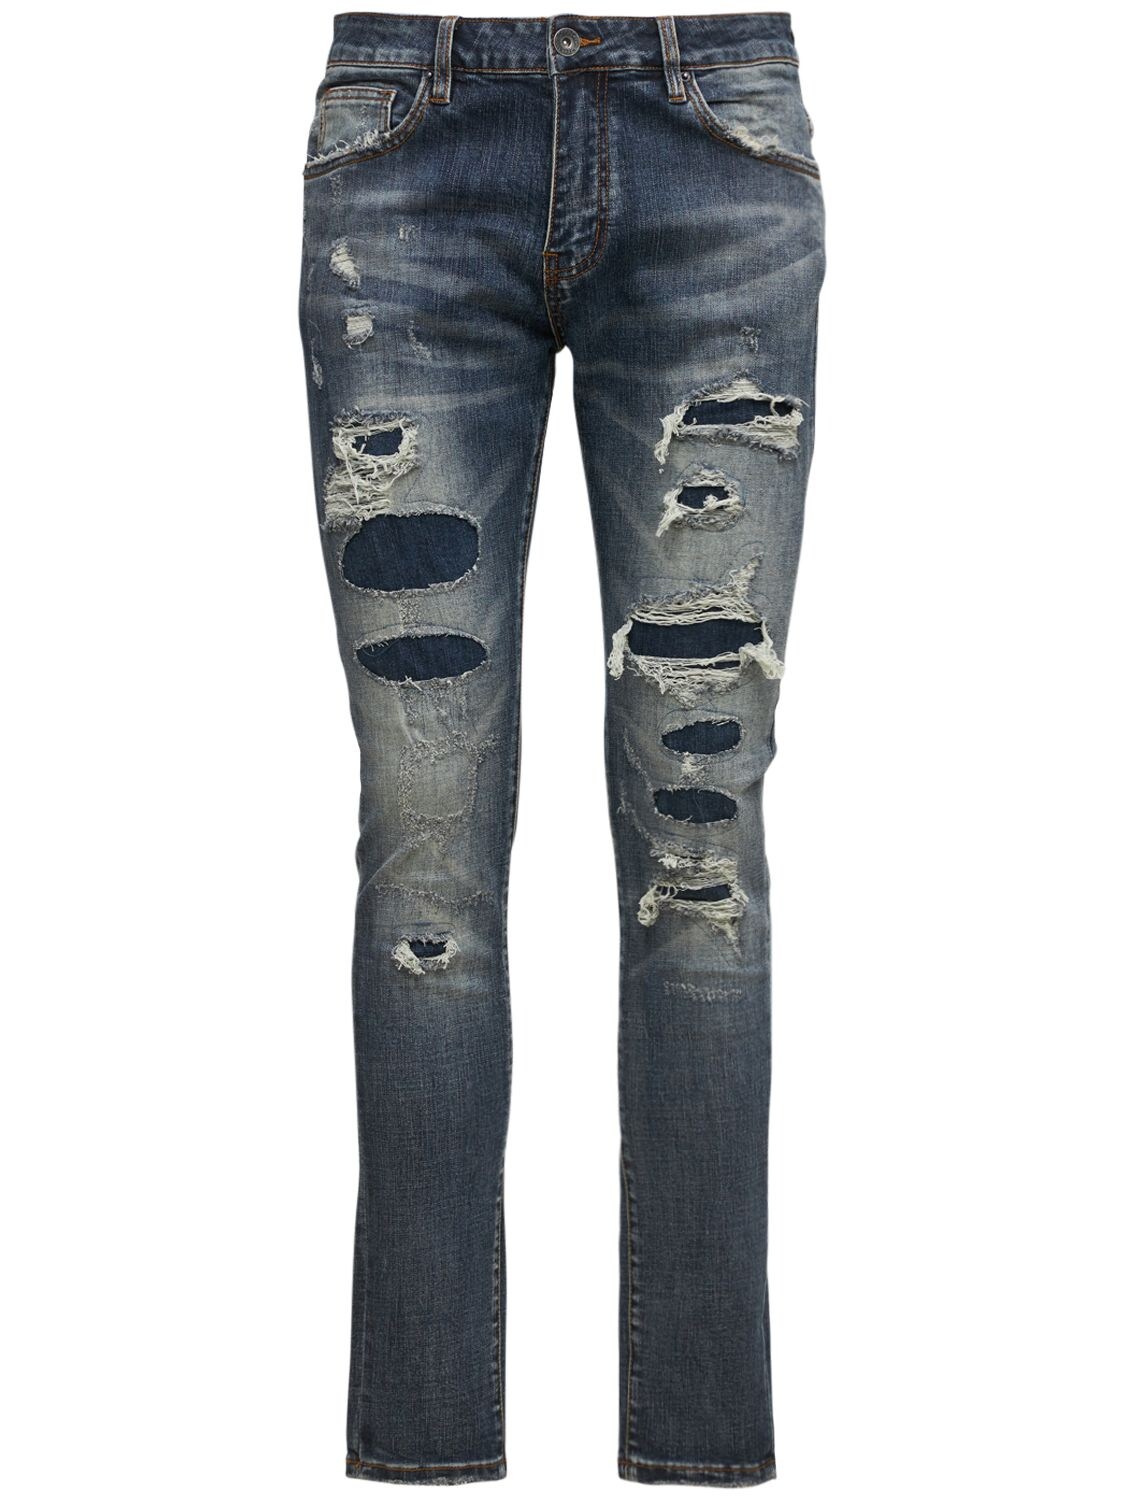 Hombre Jeans Atlantic Desgastados Lavados 28 - CRYSP - Modalova